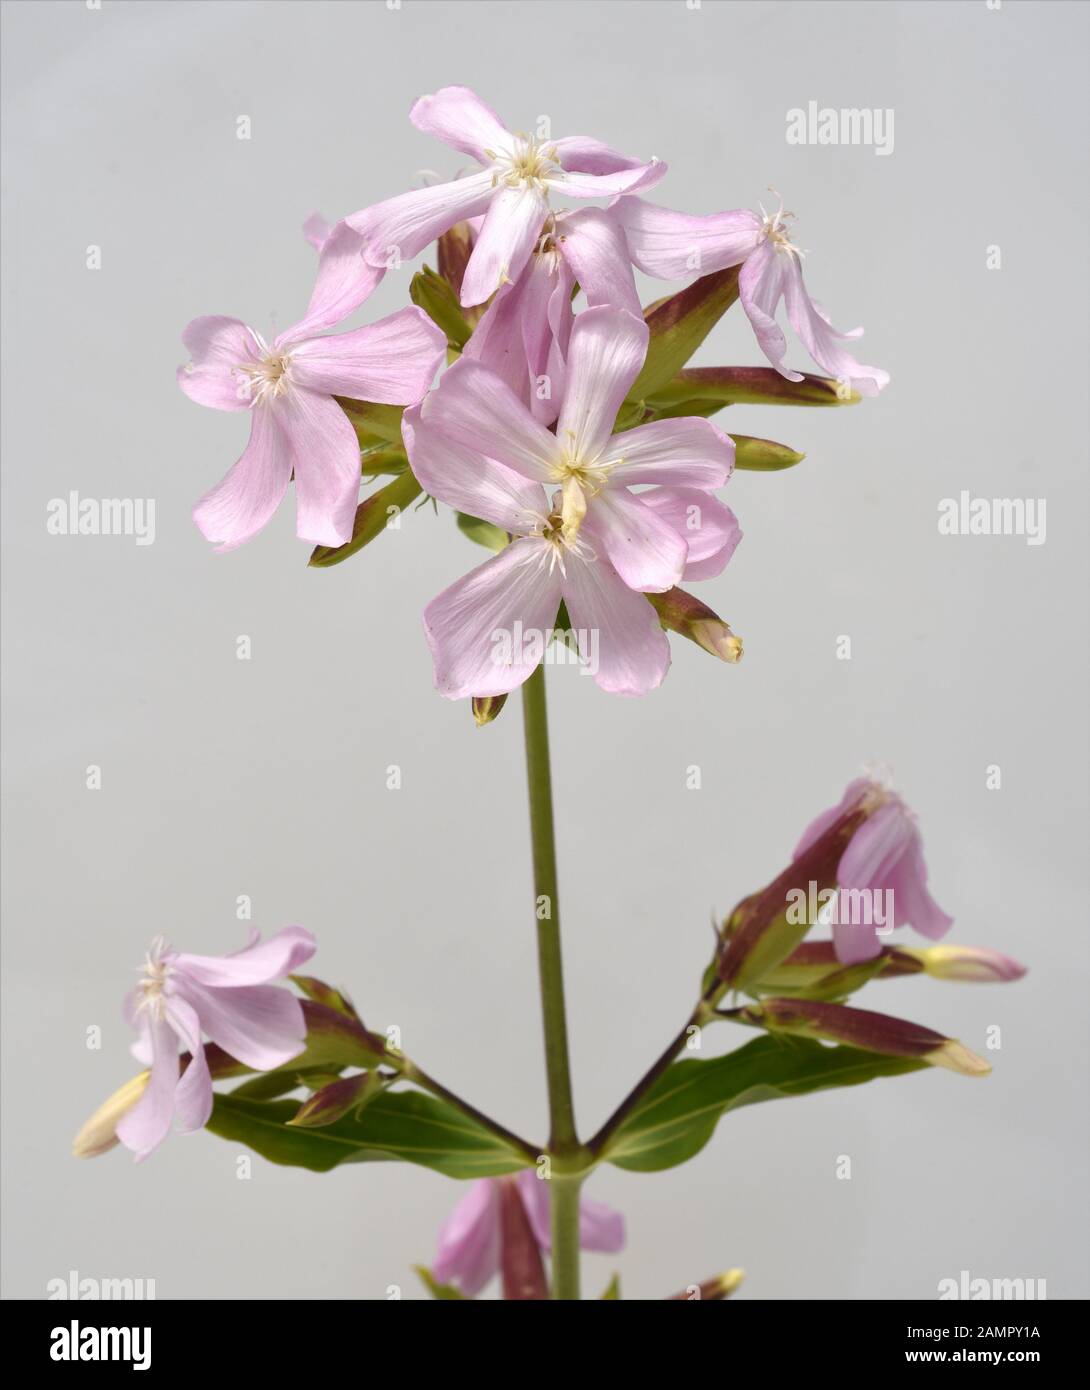 Seifenkraut, Saponaria caespitosa, ist eine wichtige Heil- und Medizinalpflanze und mit weissen Blueten. Soapwort, Saponaria caespitosa, is an importa Stock Photo